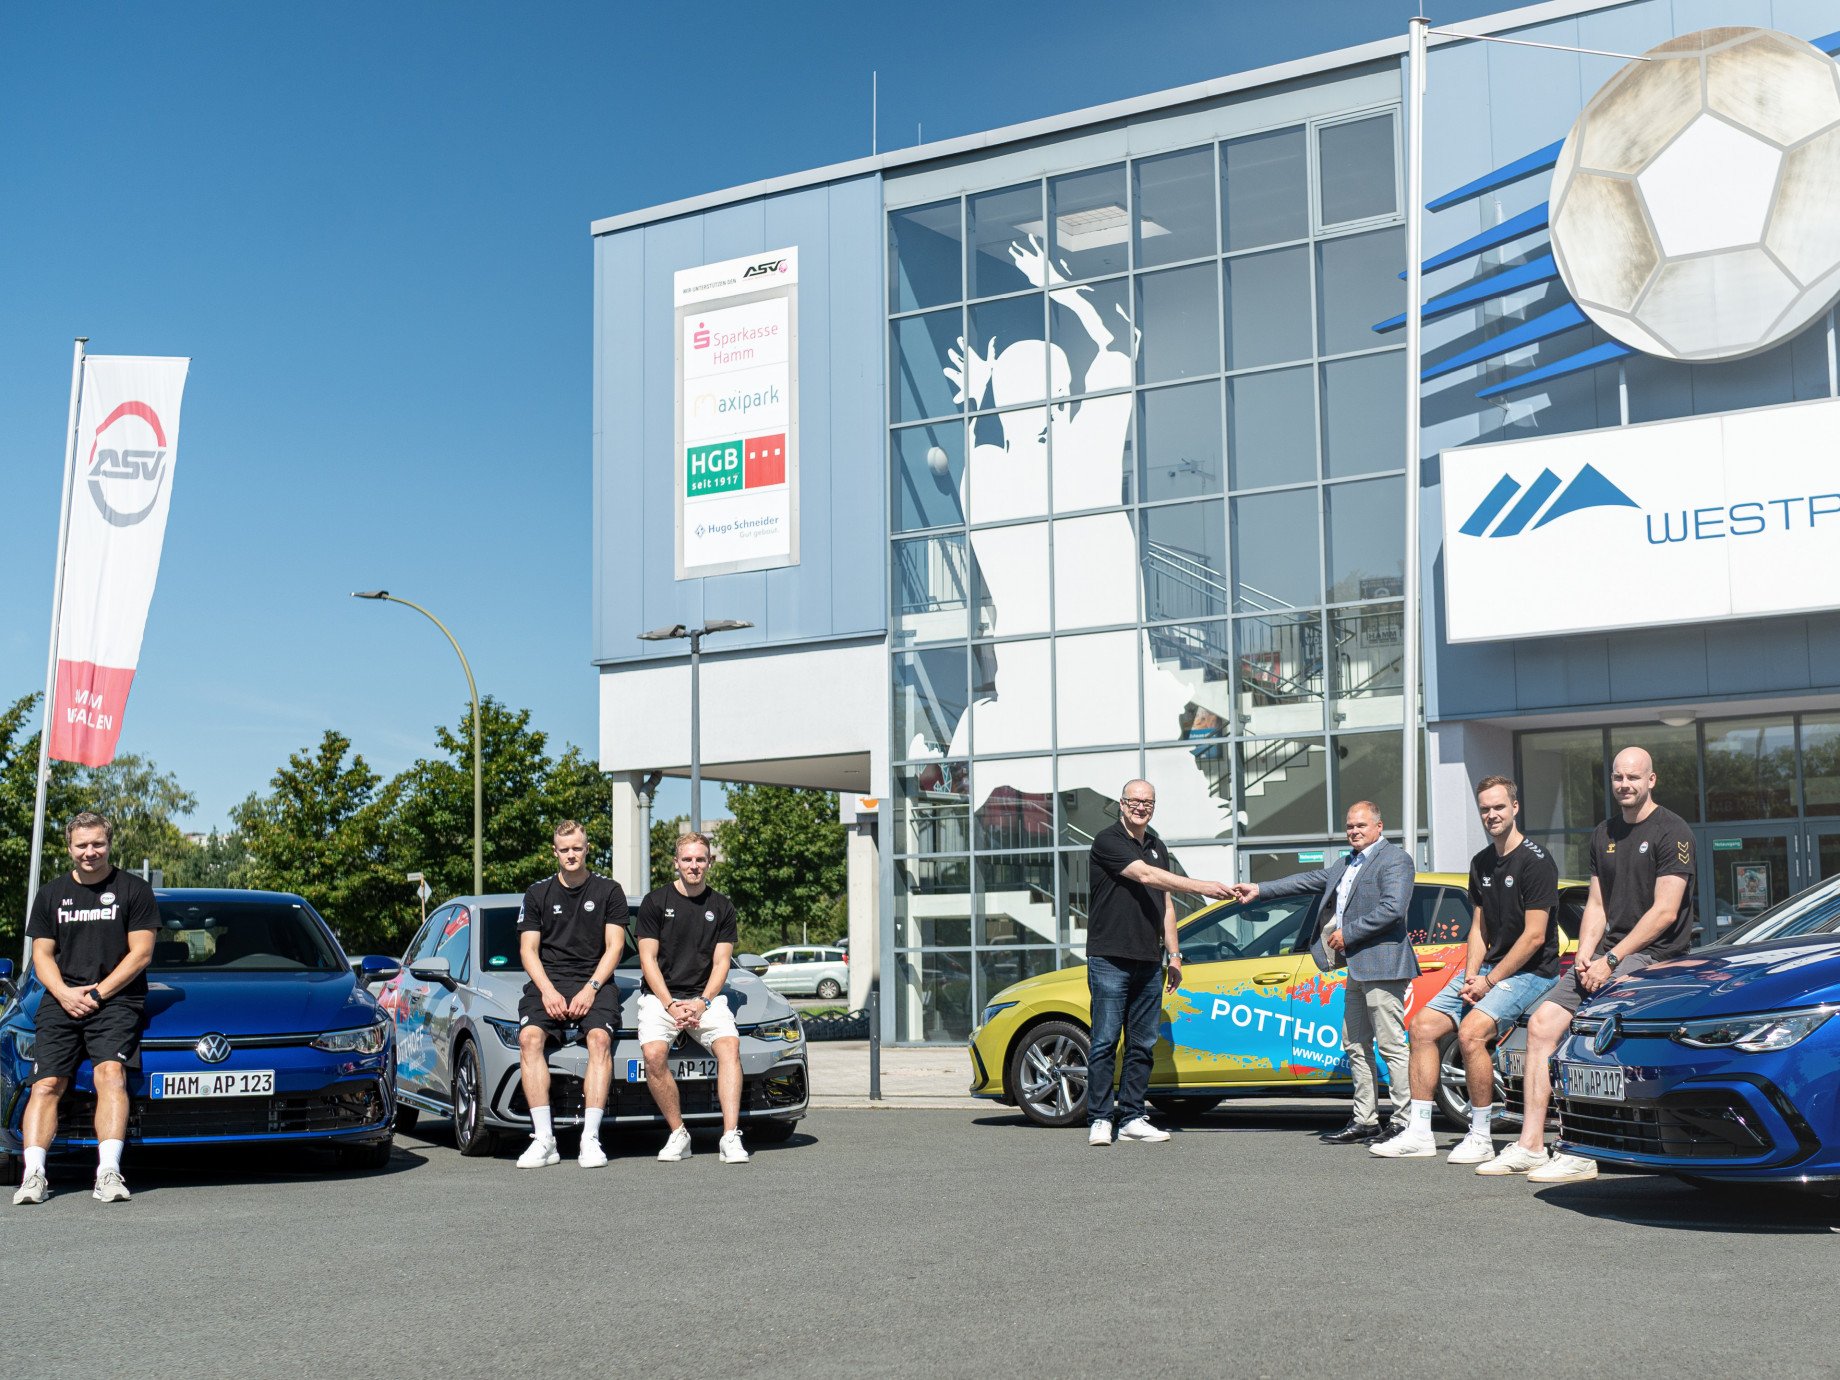 Autohaus POTTHOFF überreicht neue VW Golf VIII Modelle an ASV-Hamm Westfalen.